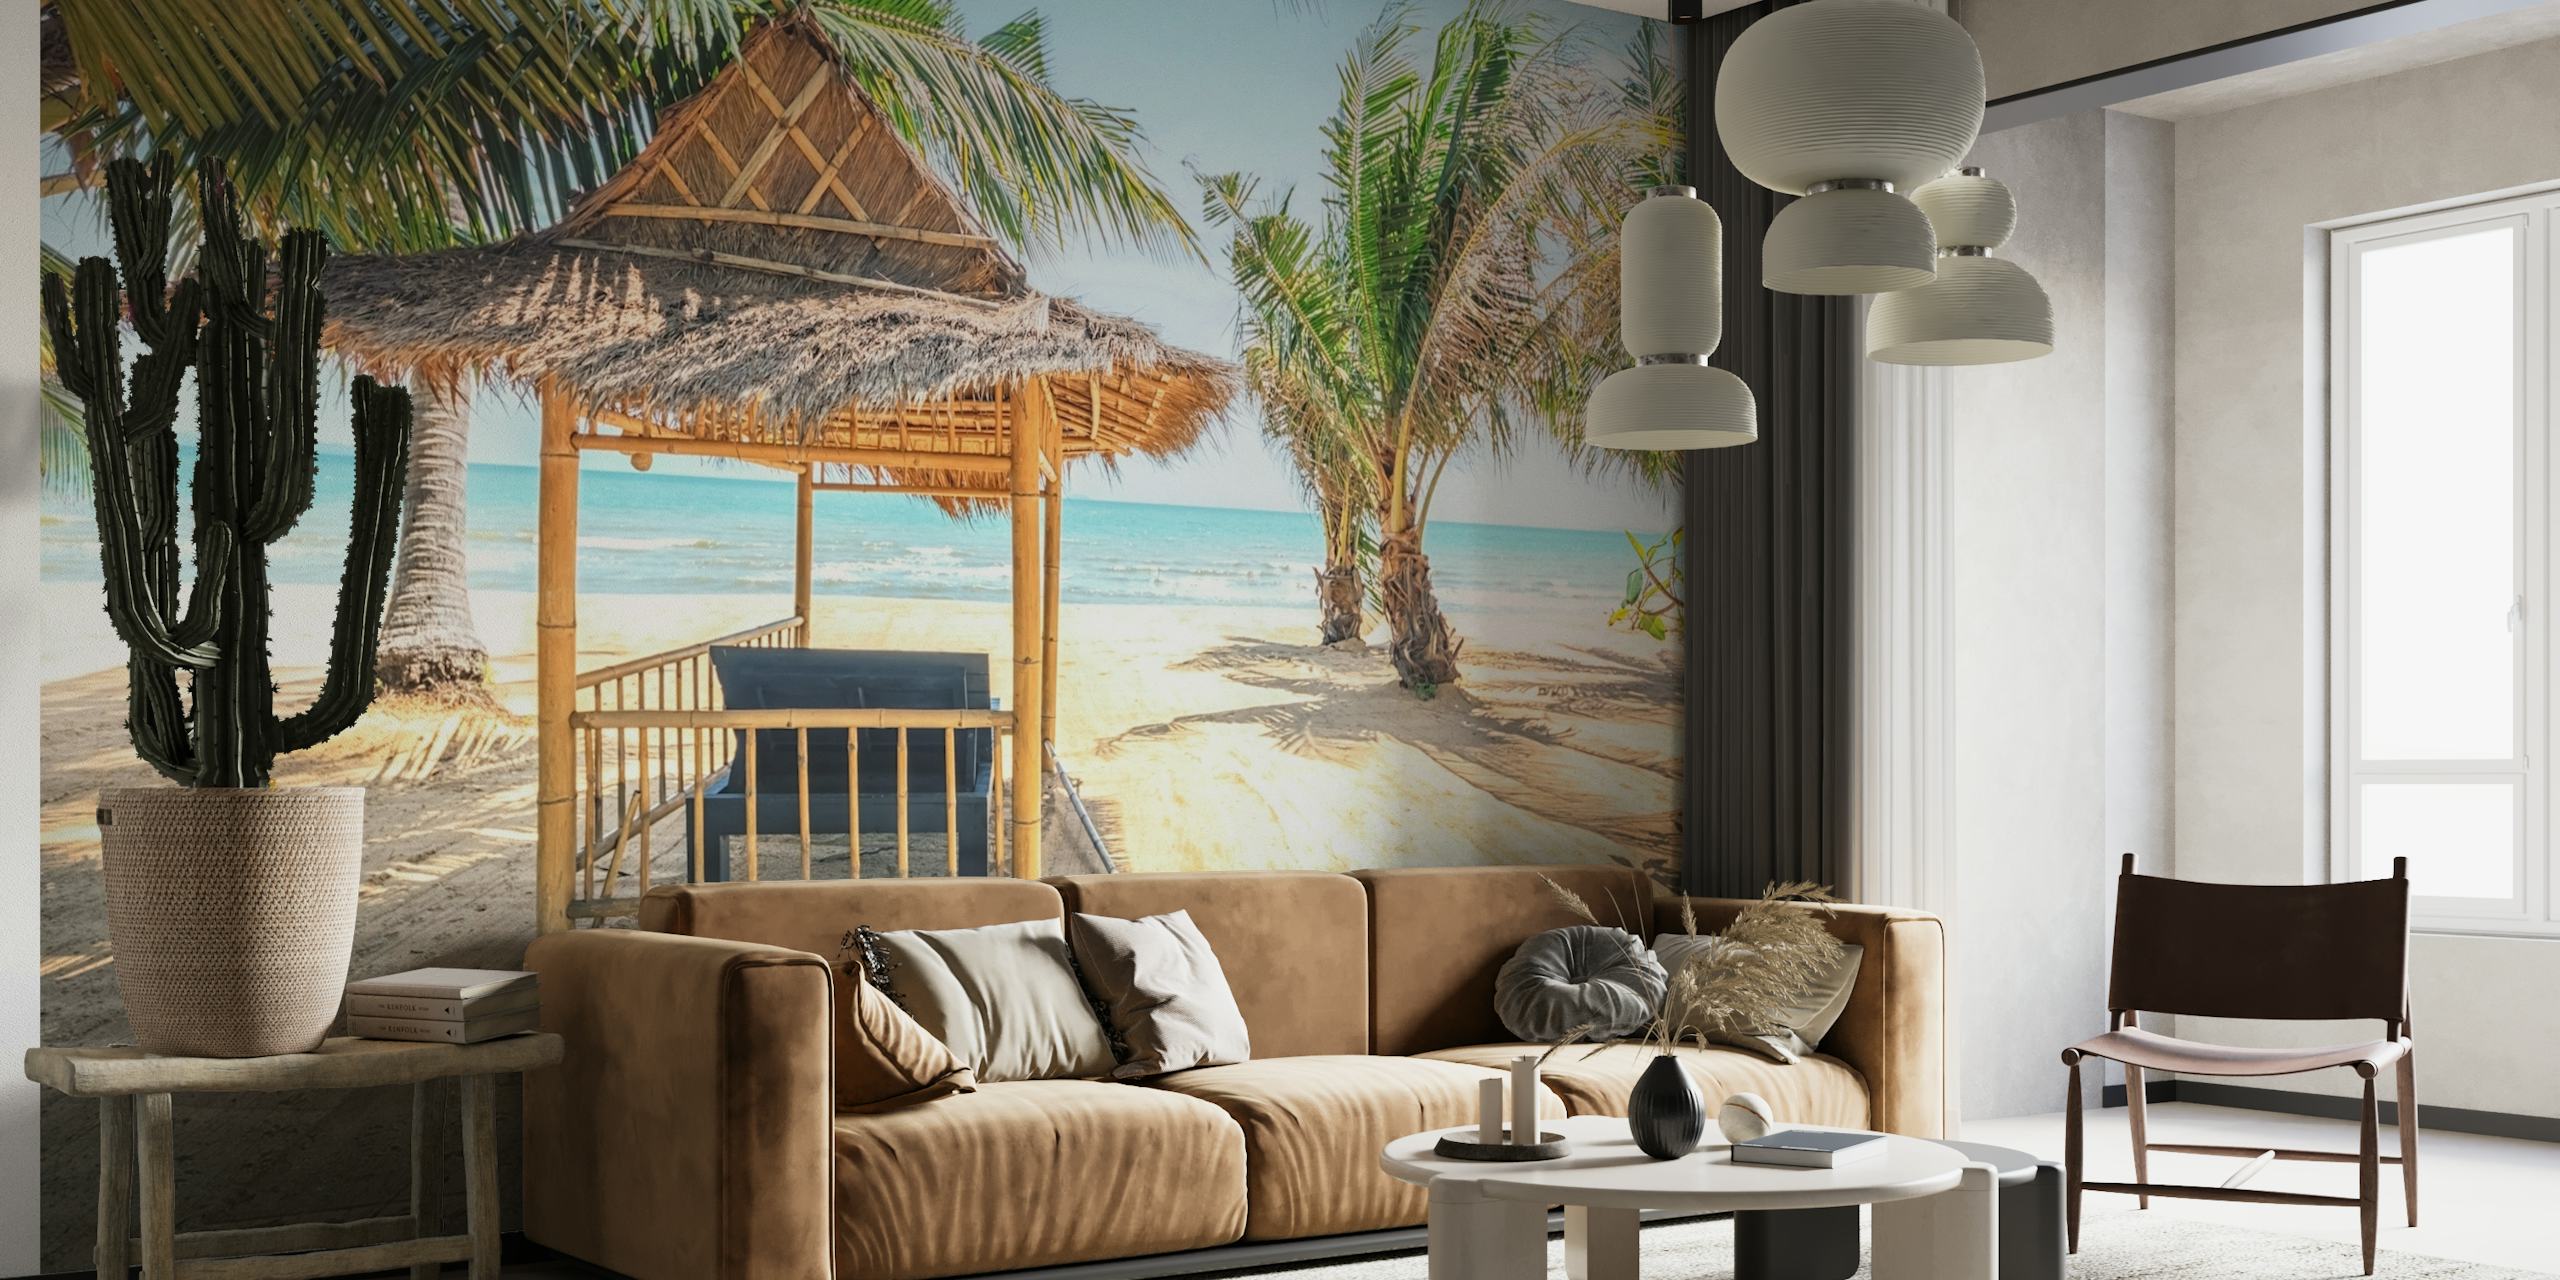 Reetgedeckte Hütte an einem Sandstrand mit Palmen und Wandbild mit Meerblick